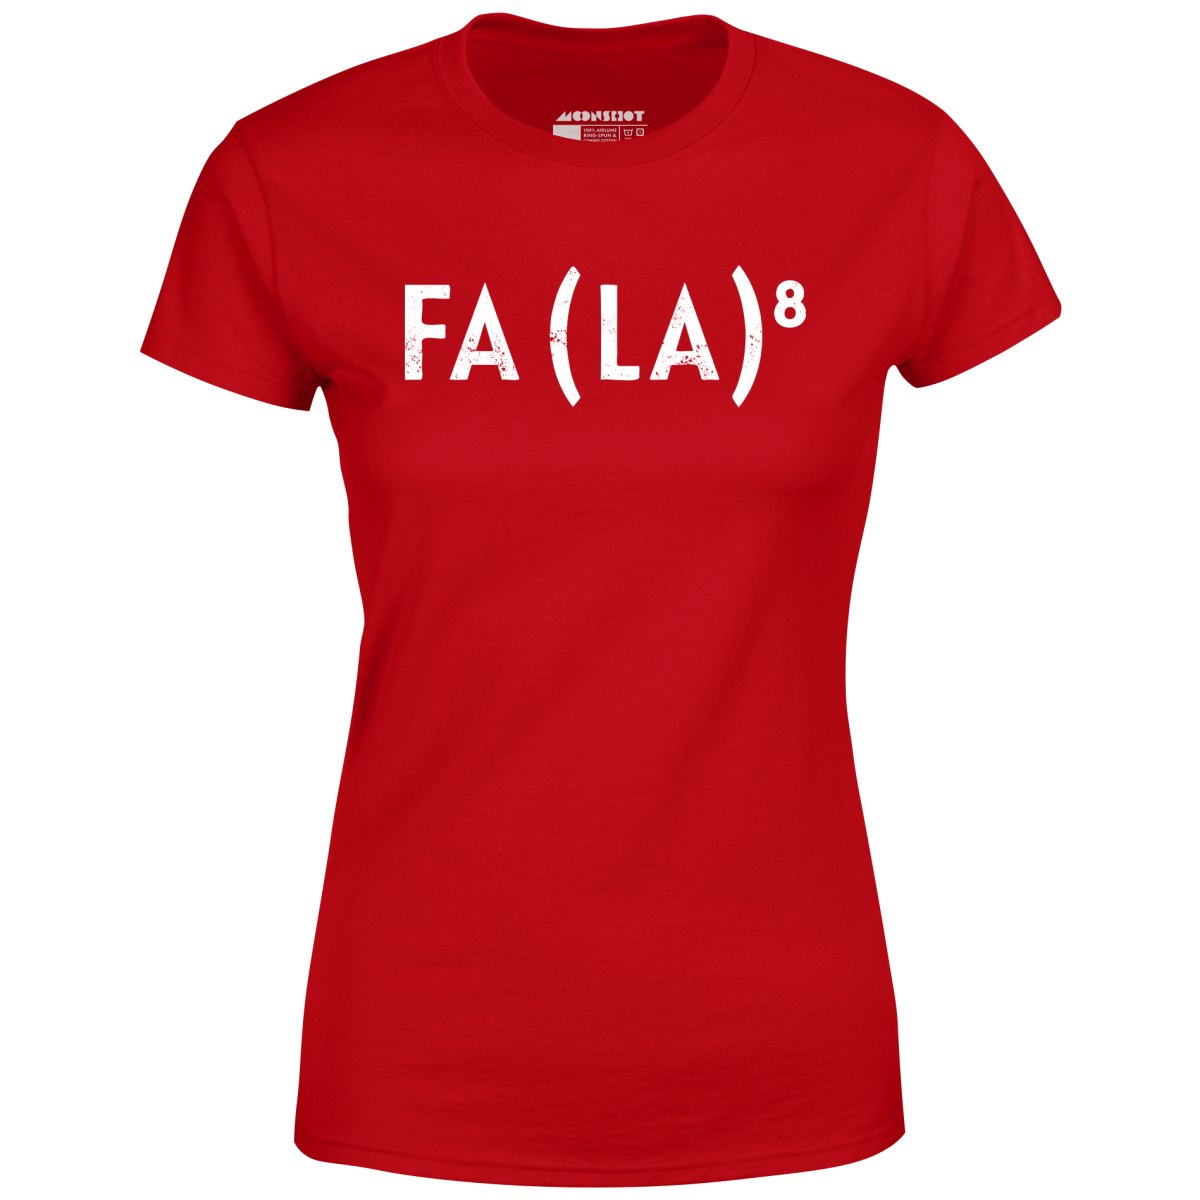 Fa La to the 8th - Women's T-Shirt